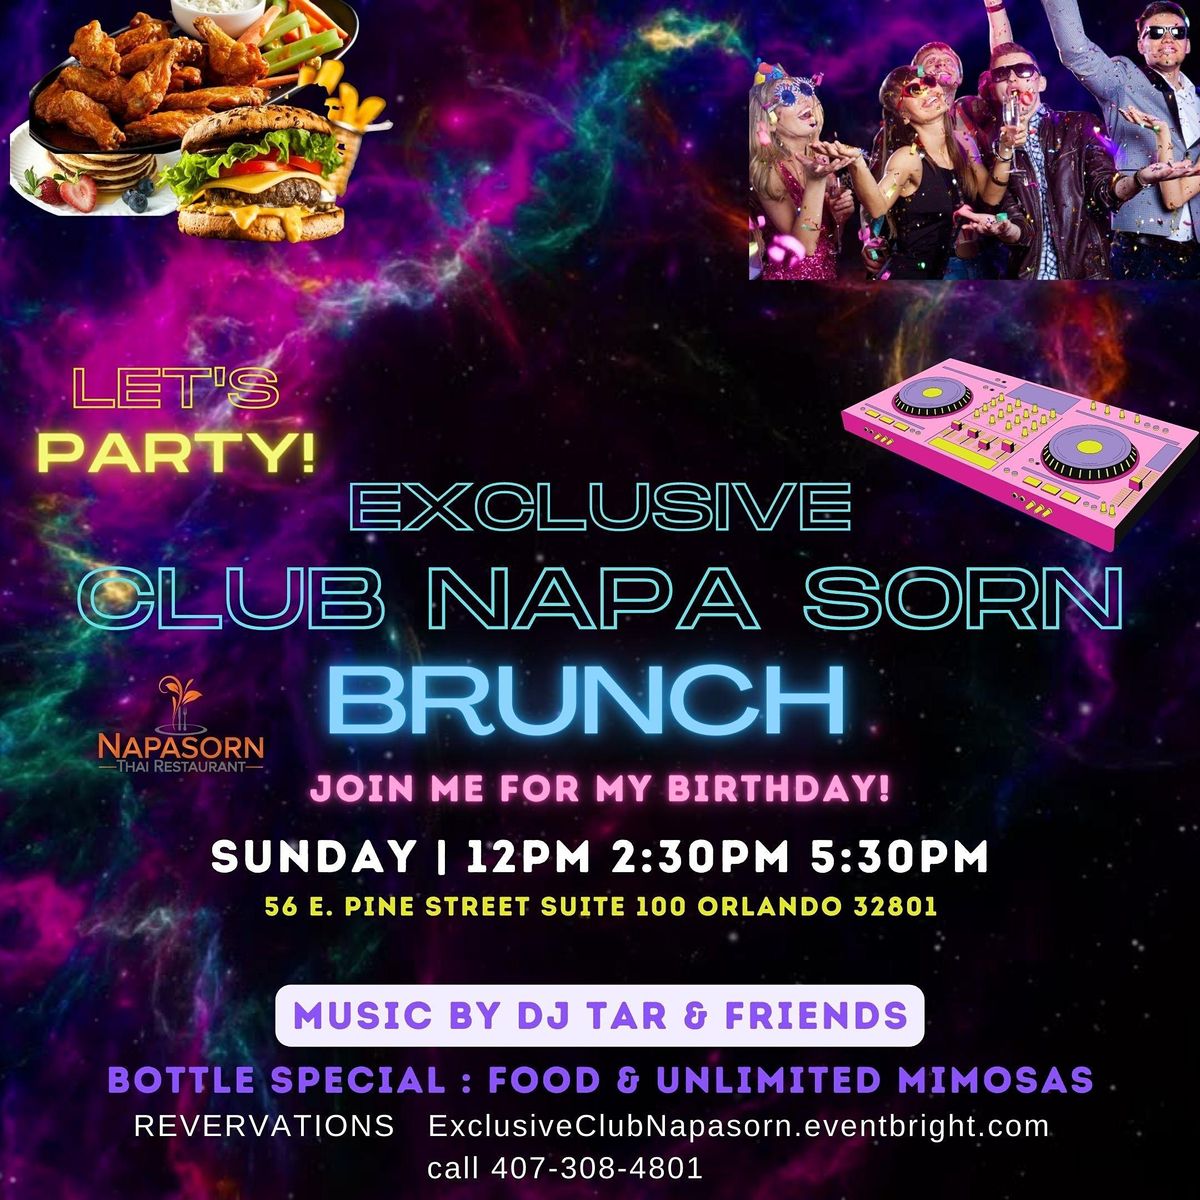 Exclusive Club Napasorn Brunch Sunday Let's Party!